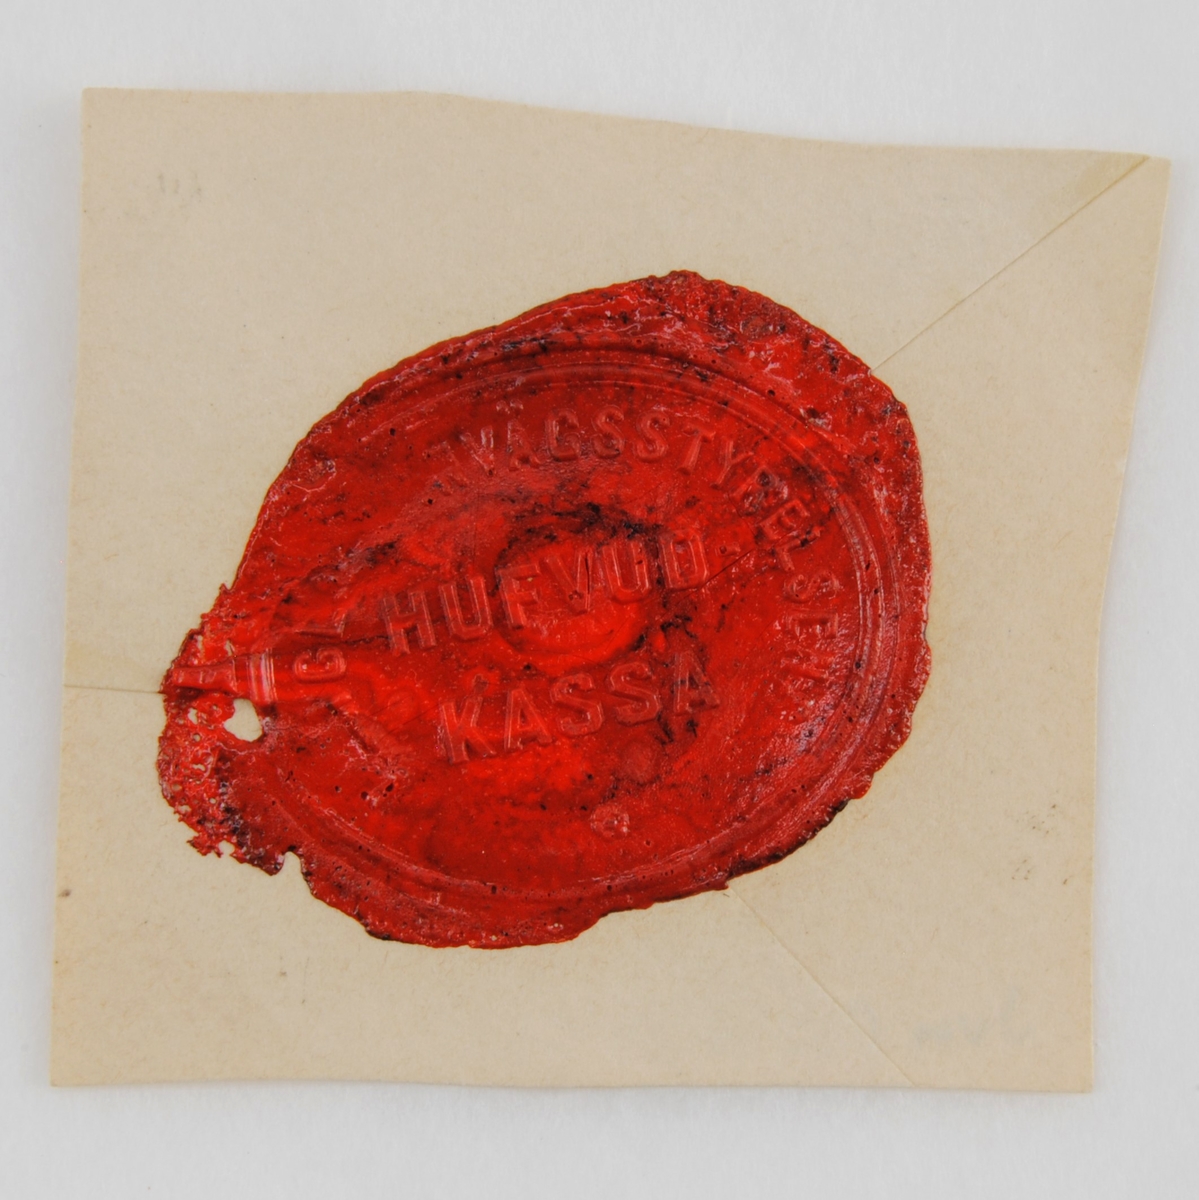 Ovalt sigillavtryck i rött lack på gultonat kuvertpapper. Text finns både längs kanten och i rader mitt på sigillet. Underst finns en liten blomma.